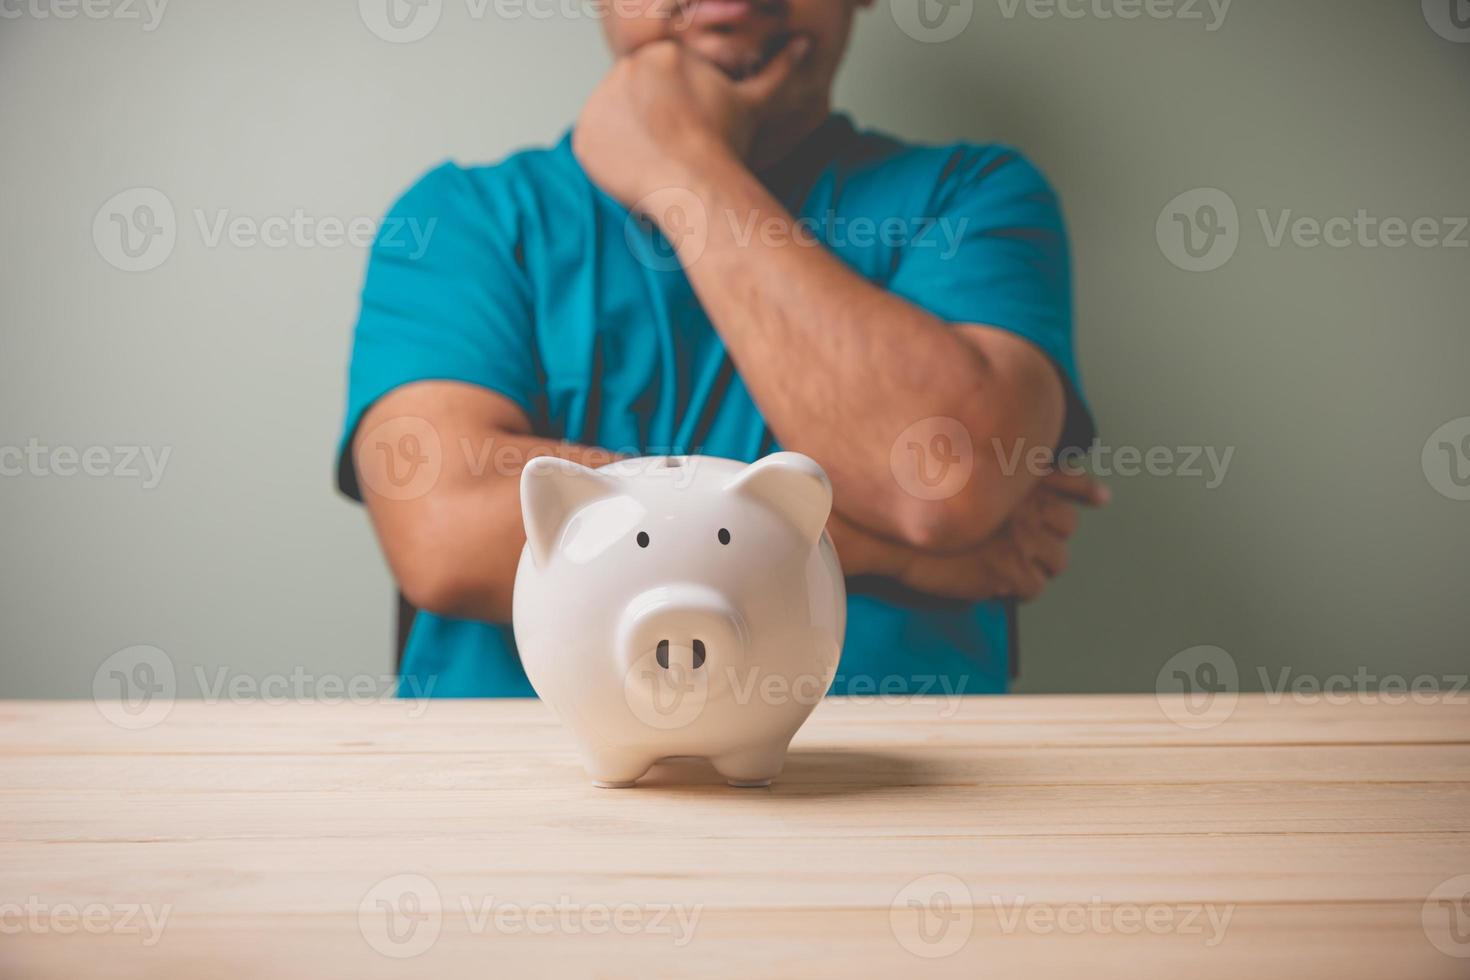 una alcancía blanca sobre una mesa de madera con un hombre considere una alcancía blanca para planear ahorrar dinero para inversiones futuras. concepto de ahorro, planificación financiera para el futuro, negocios, contabilidad. foto